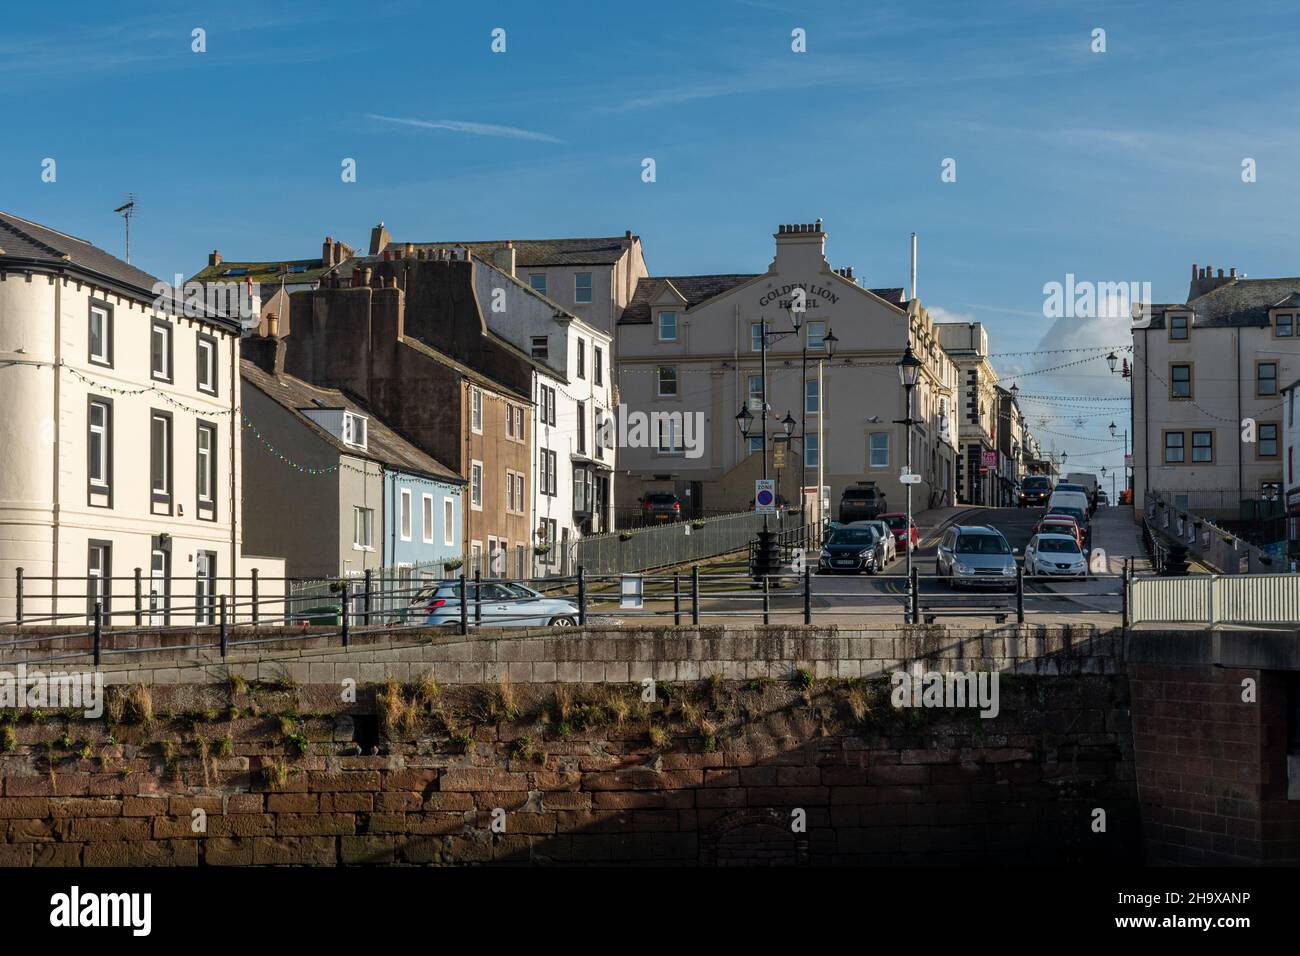 Vue sur la rue de Maryport, une ville côtière de Cumbria, Angleterre, Royaume-Uni Banque D'Images